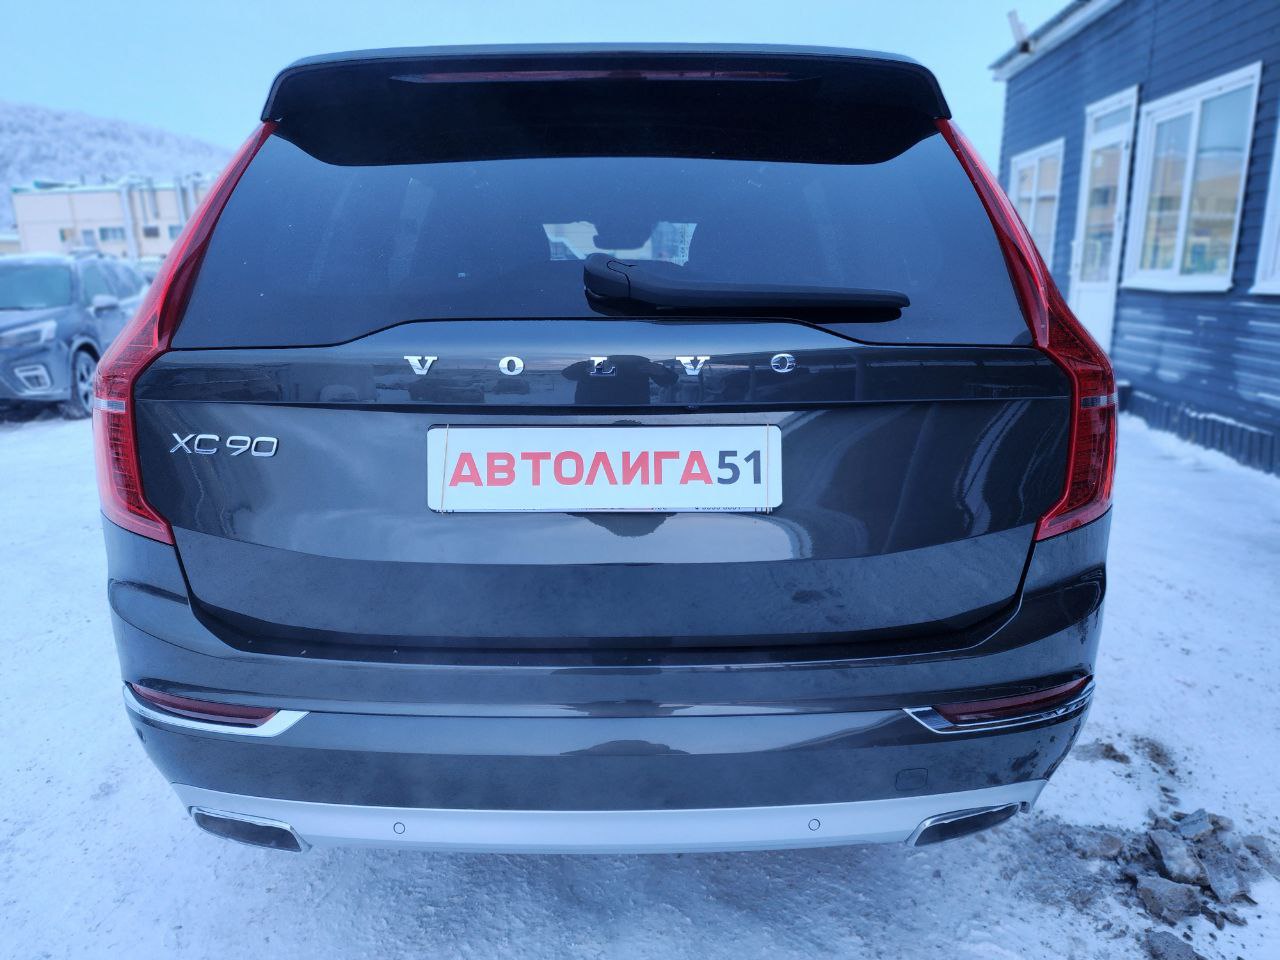 Volvo Volvo XC90, 2018 г.в., пробег 85 697 км, цена, фото, Мурманск